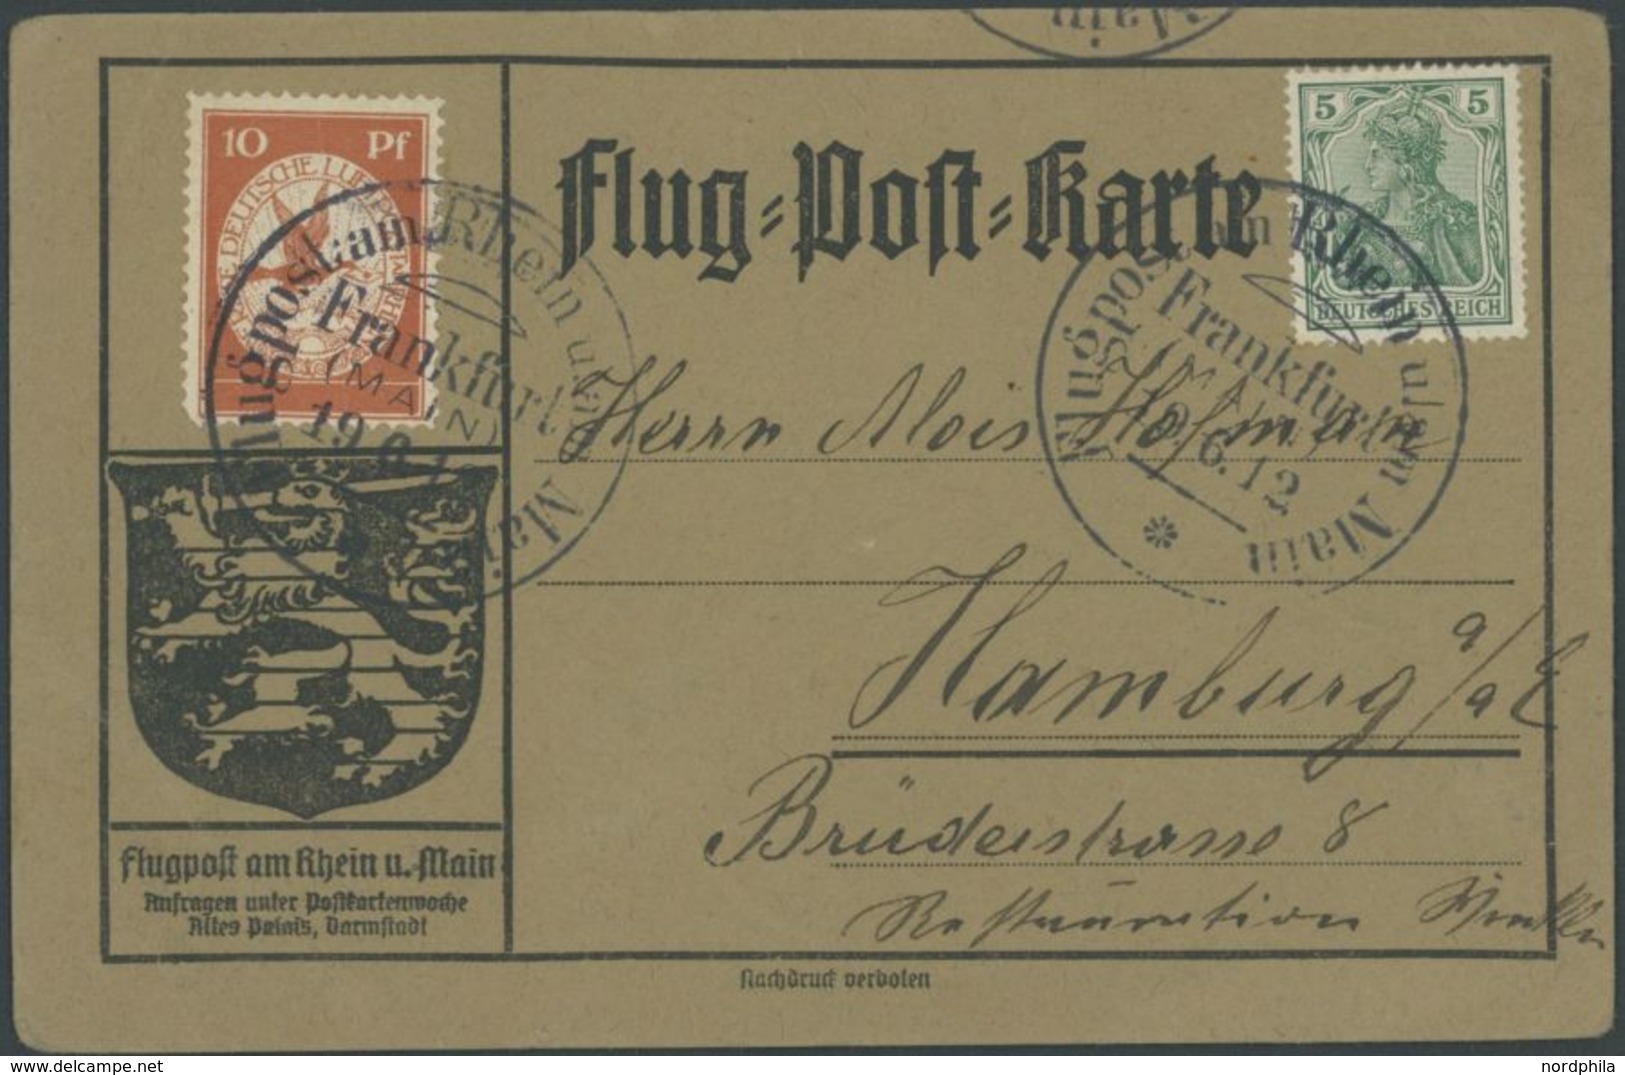 1912, 10 Pf. Flp. Am Rhein Und Main Auf Flugpostkarte Mit 5 Pf. Zusatzfrankatur, Sonderstempel Frankfurt 19.6.12, Selten - Luft- Und Zeppelinpost